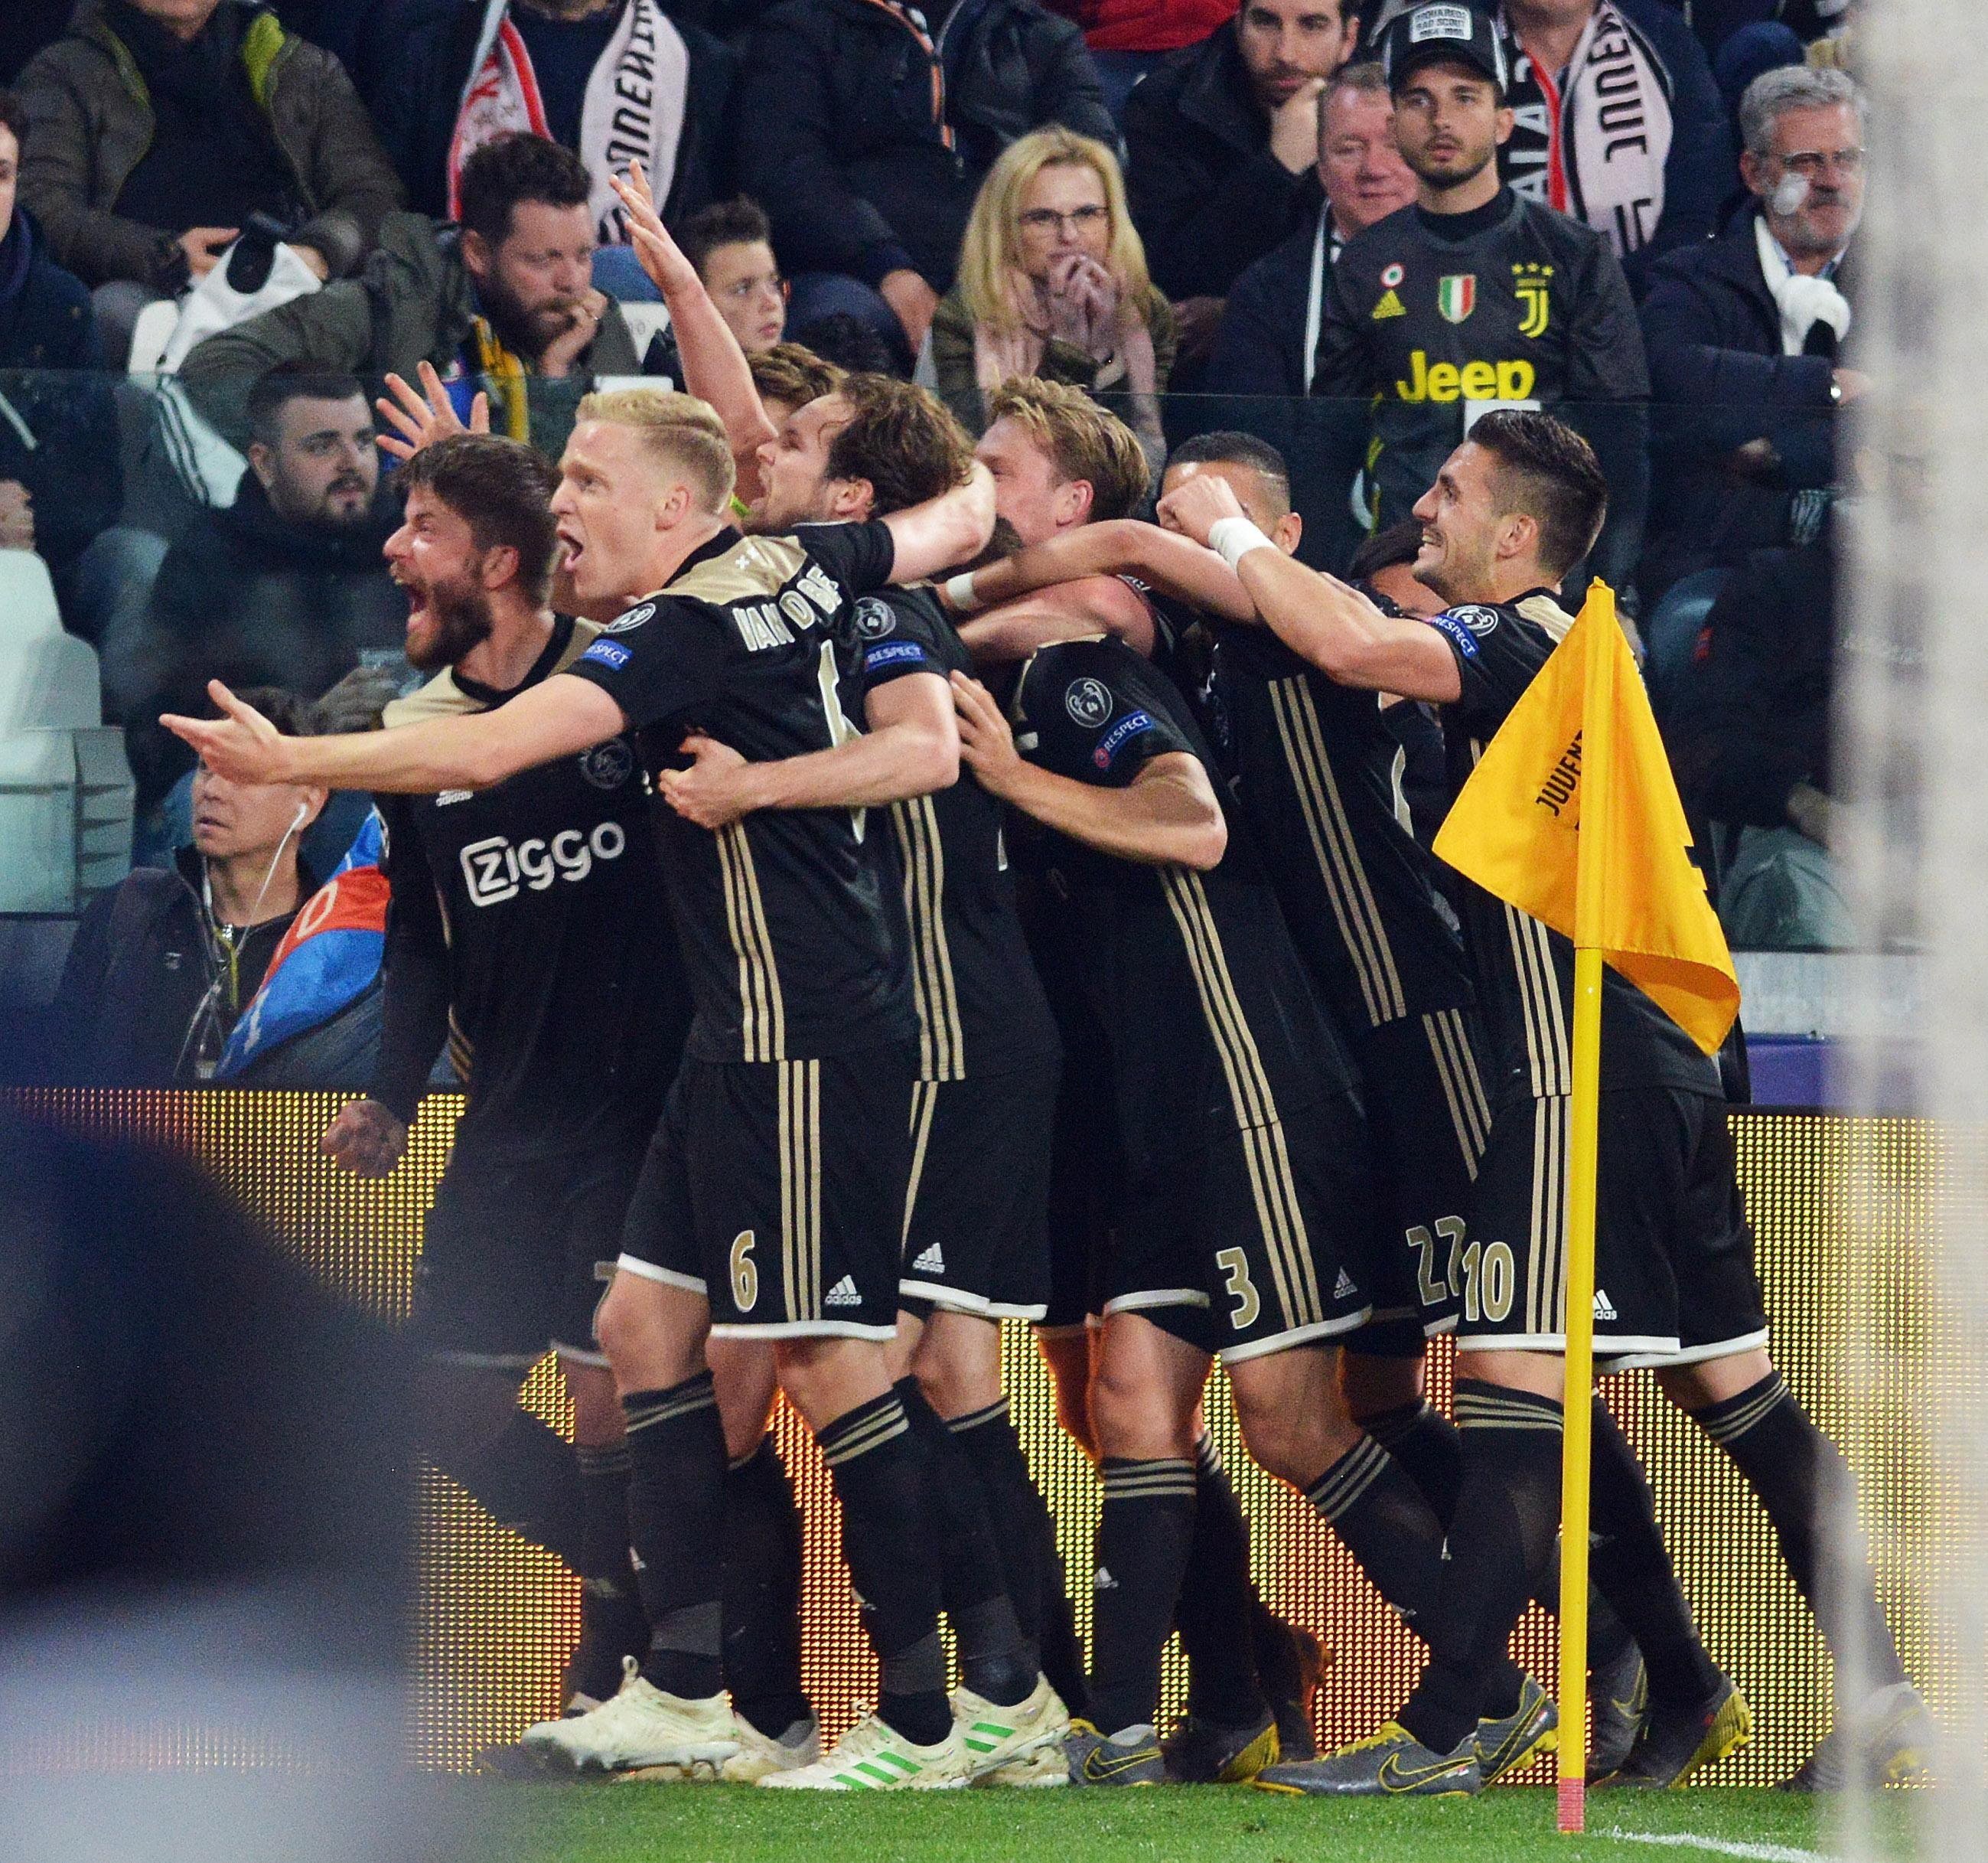 L'Ajax vol continuar amb l'idil·li contra el Tottenham